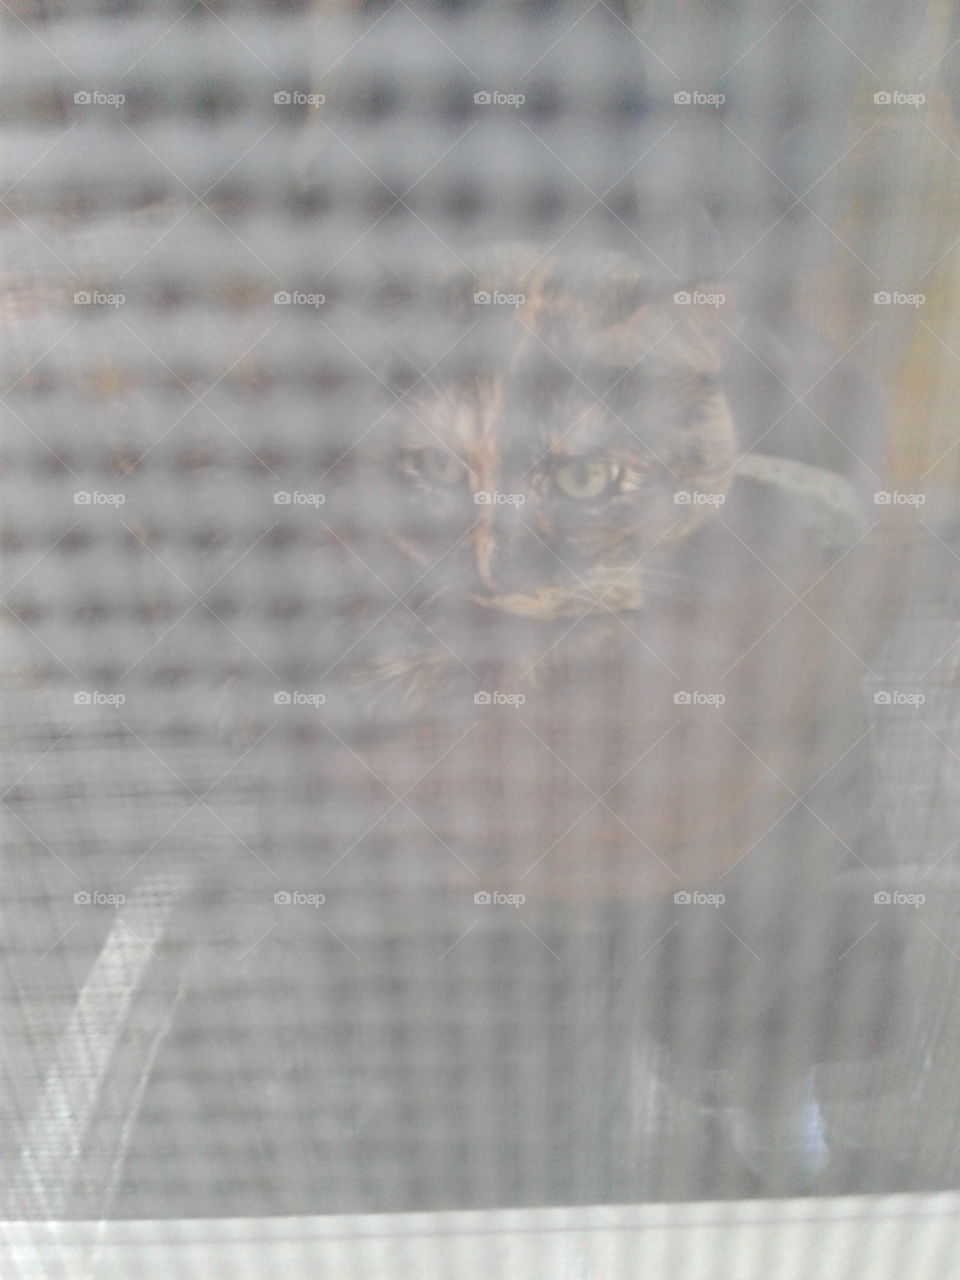 cat behind window screen